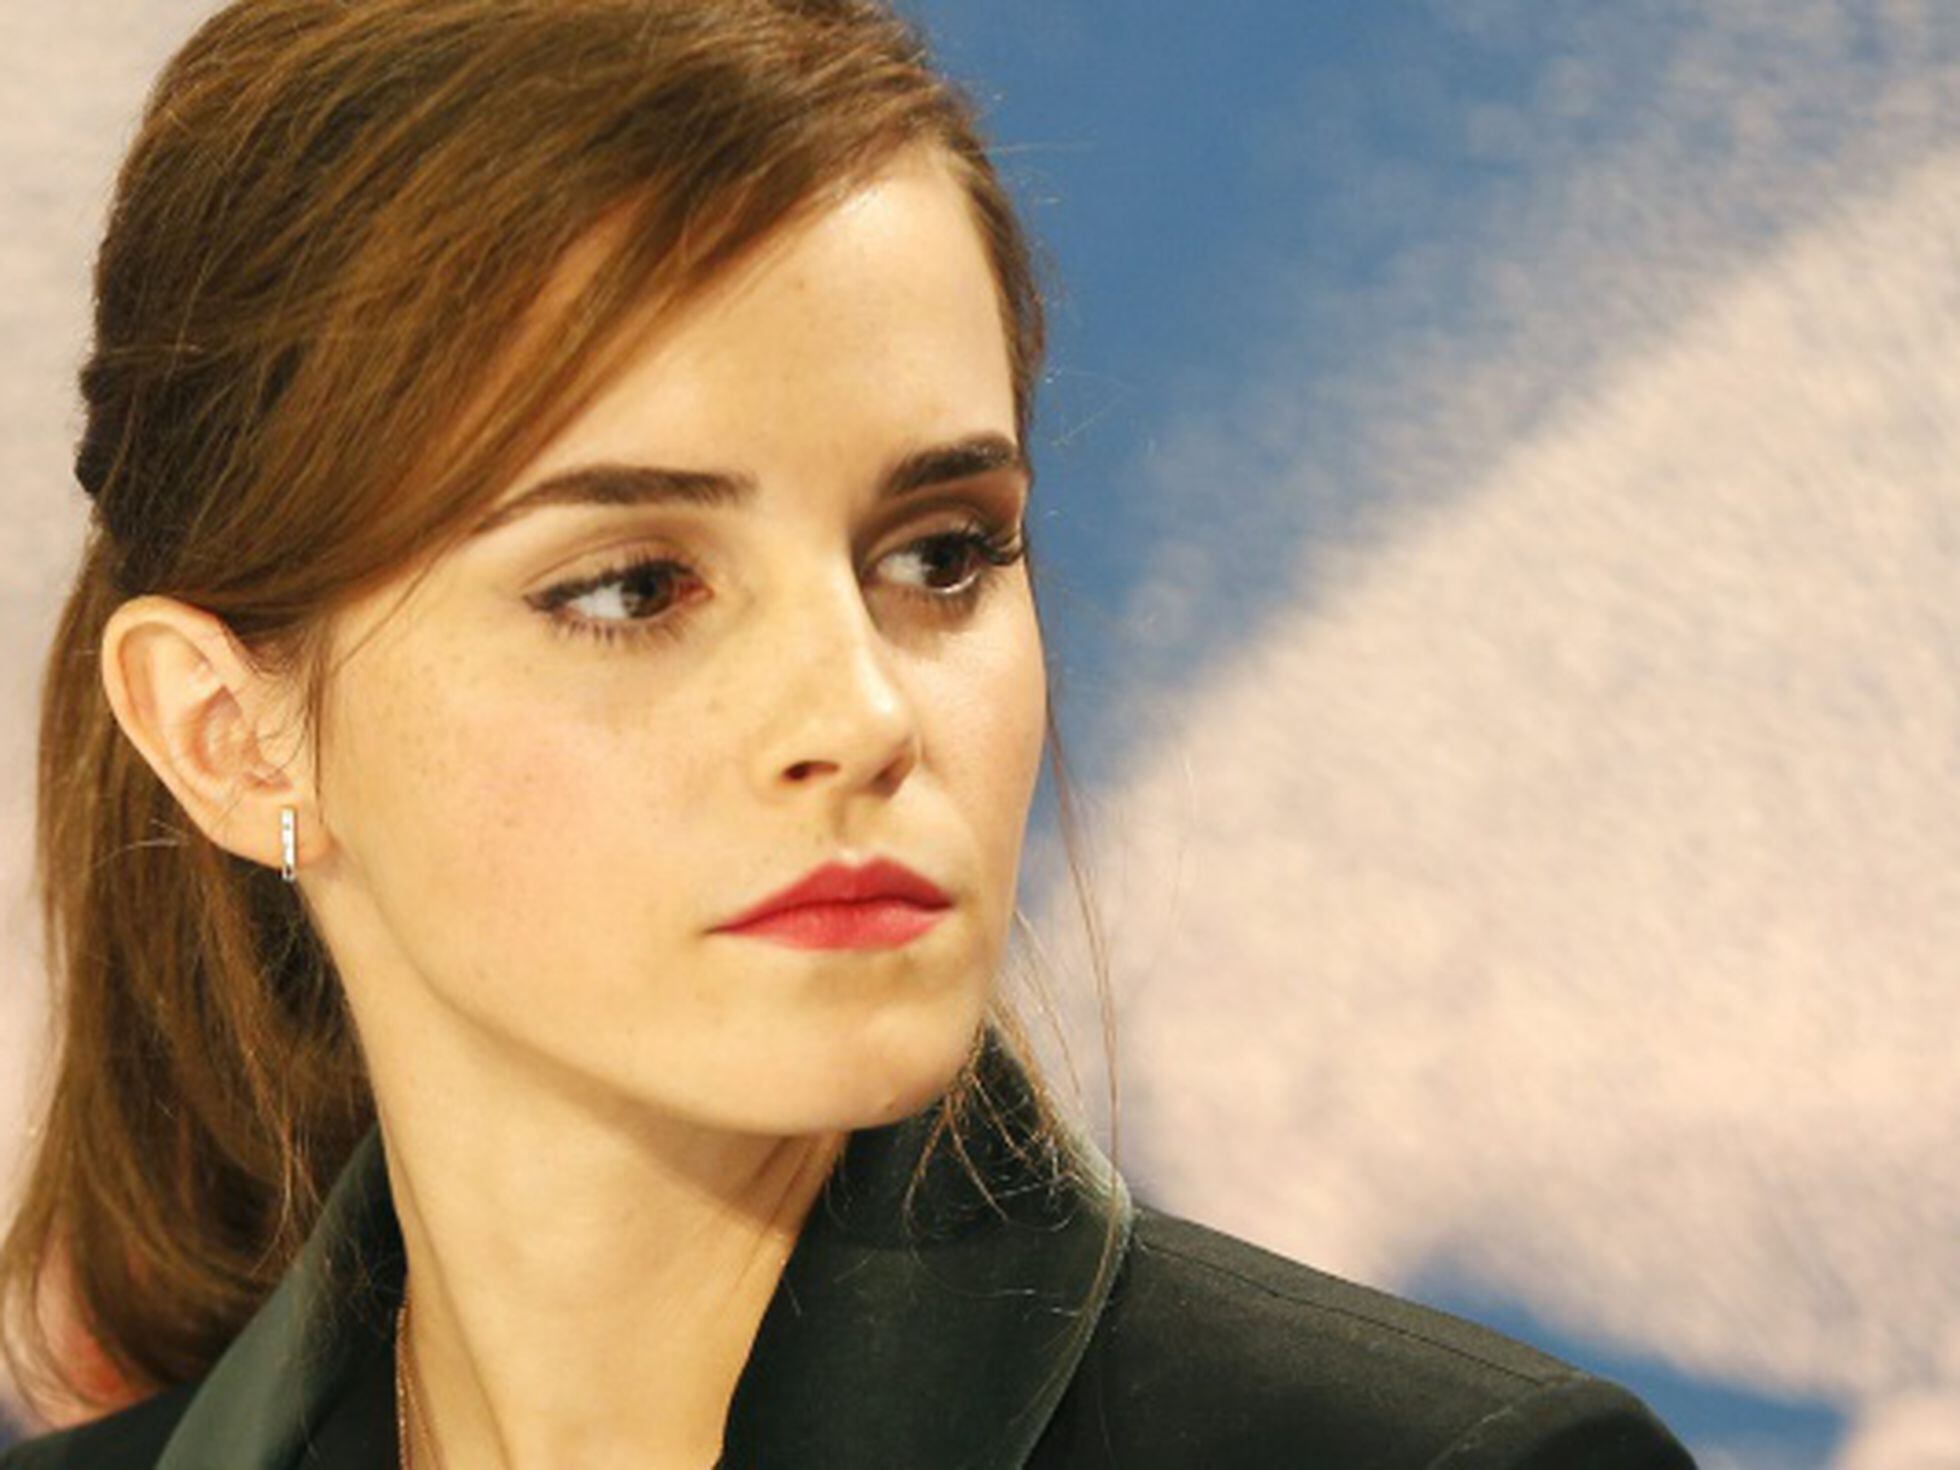 cola habla Seguir Emma Watson: Mujeres famosas, mujeres reivindicativas | Estilo | EL PAÍS